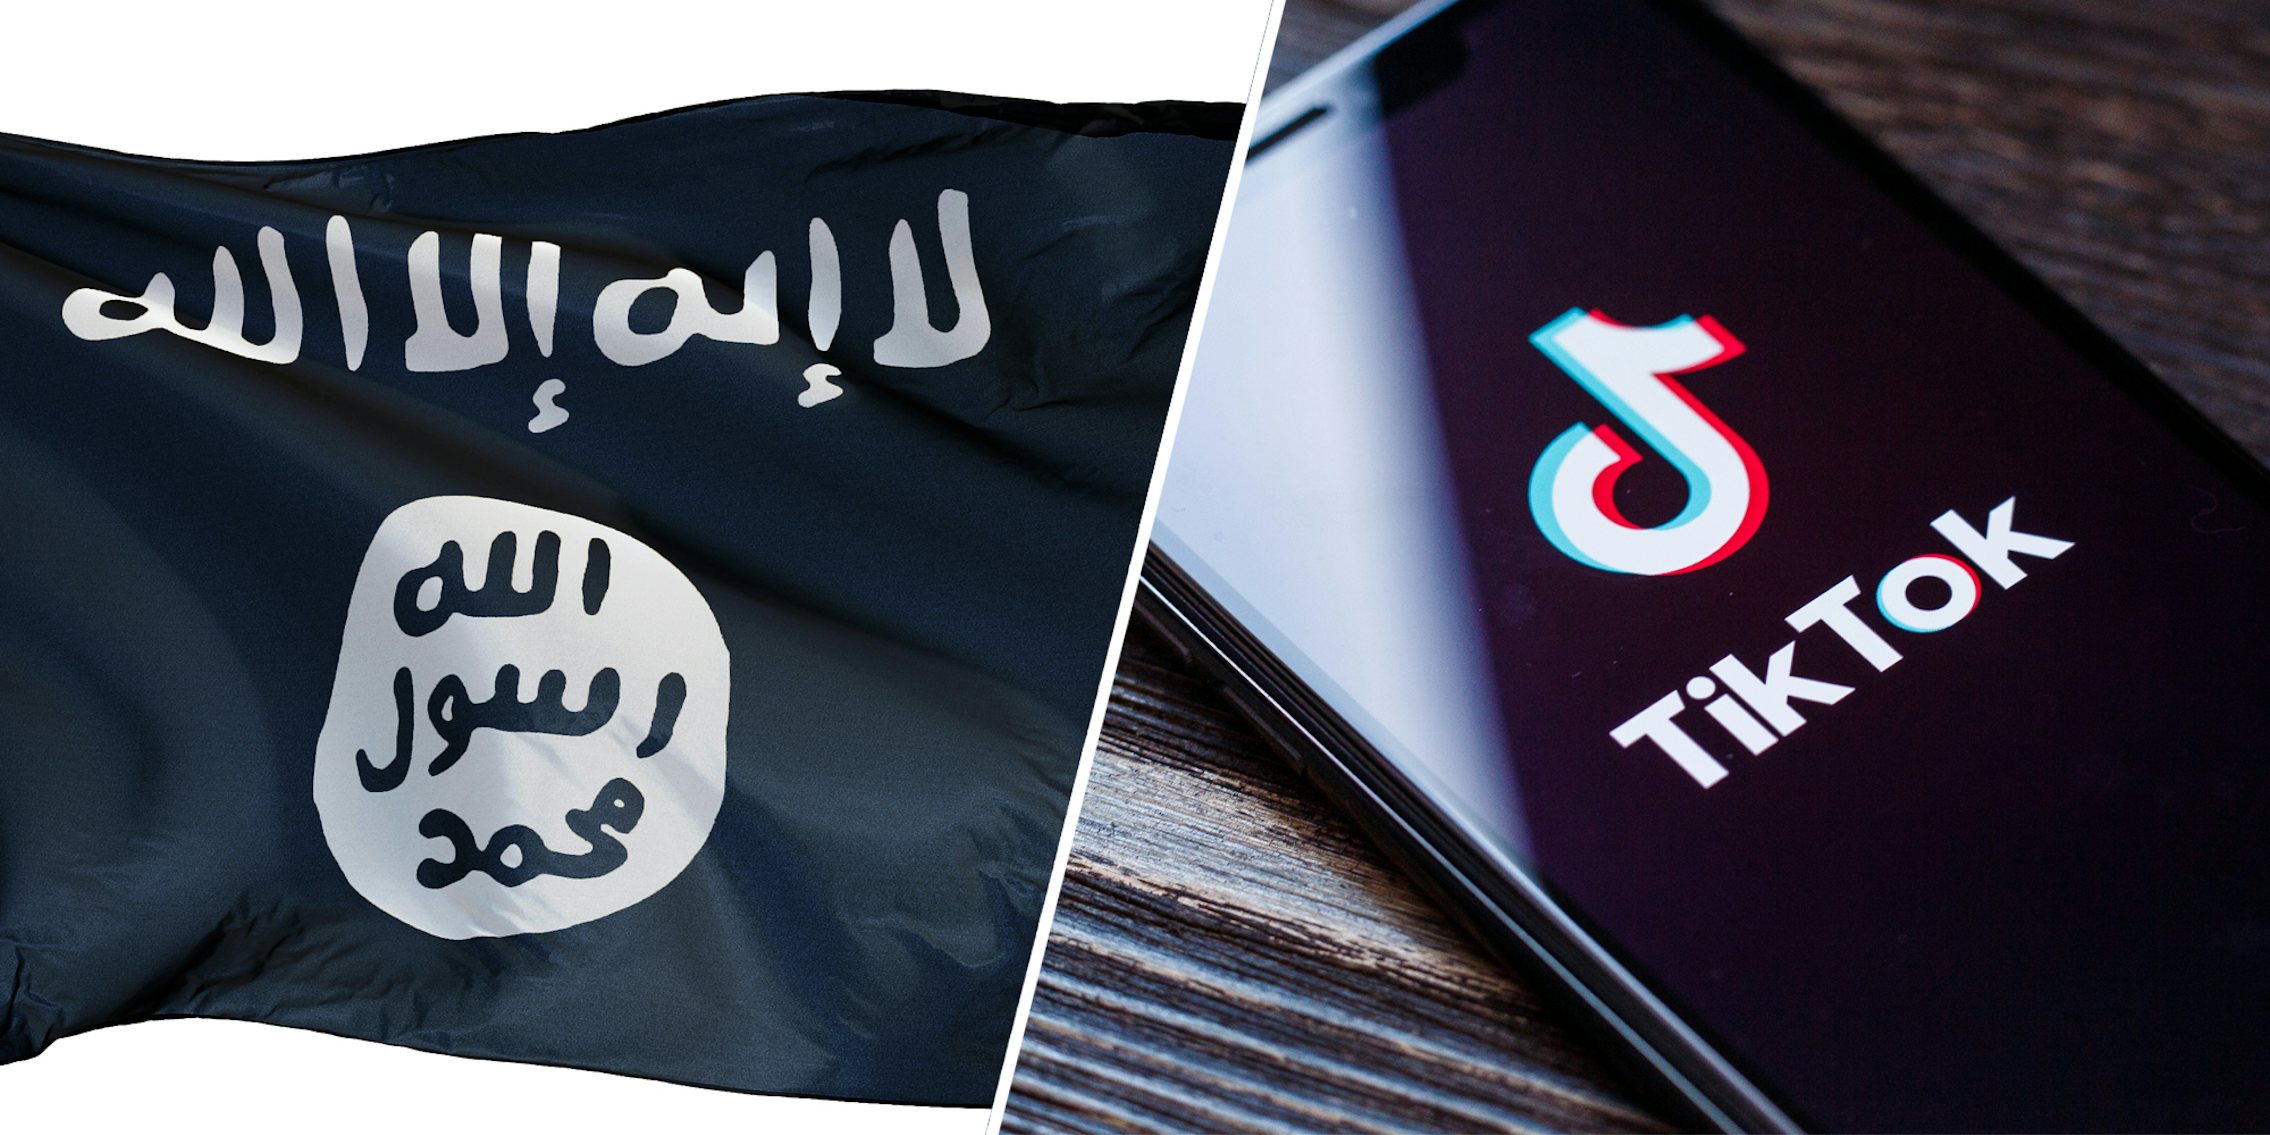 Isis flag(l), Tiktok app on phone(r)